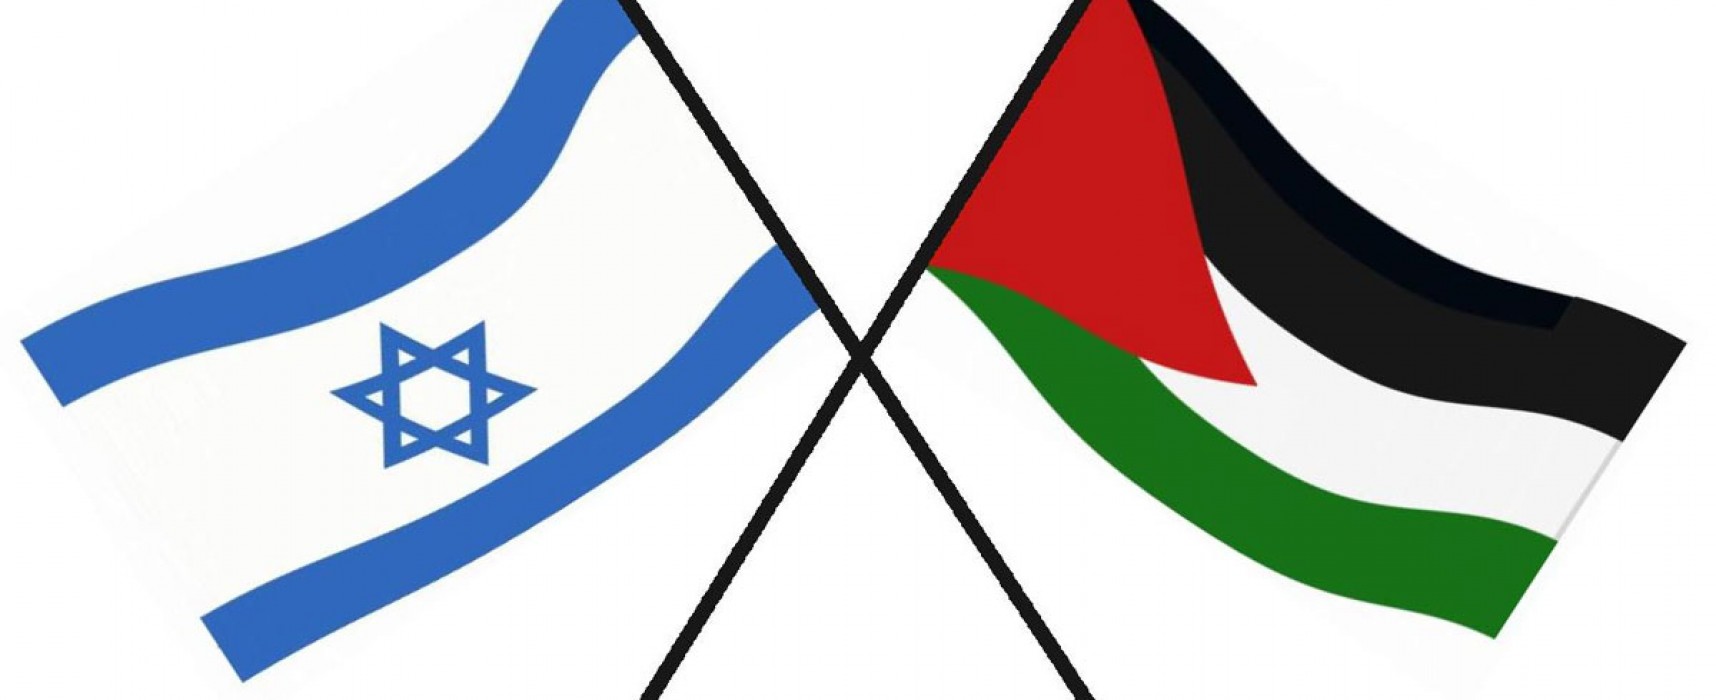 Il centro-sinistra biscegliese chiede che il consiglio comunale discuta dell’azione militare isrealiana in Palestina